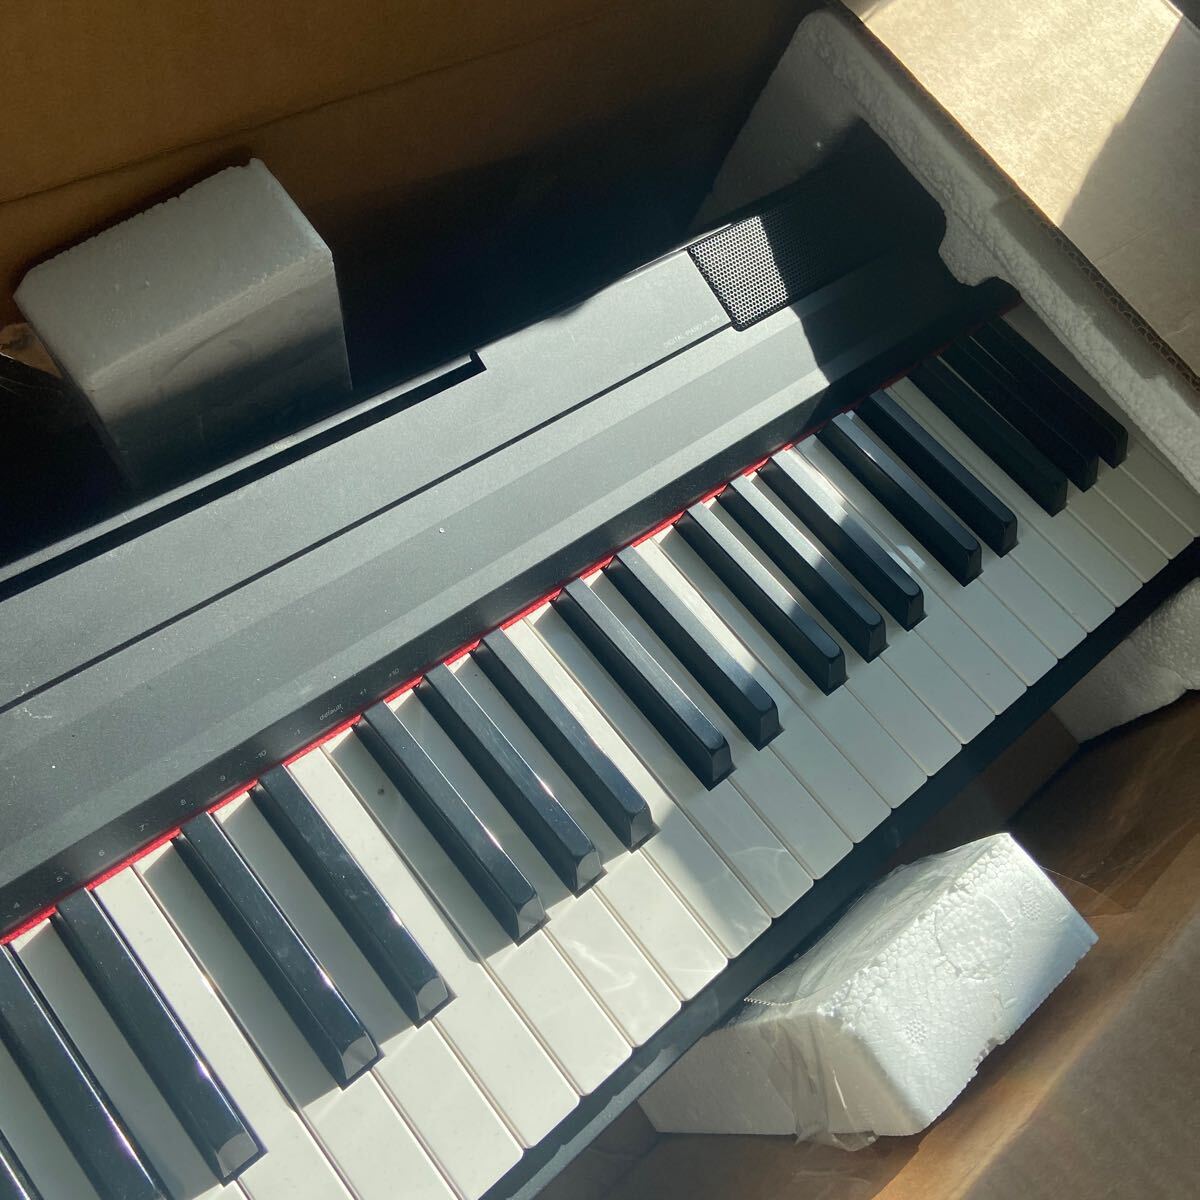 YAMAHA 電子ピアノ キーボード 88鍵 P-105B ブラック 2014年製 動作確認済み_画像2